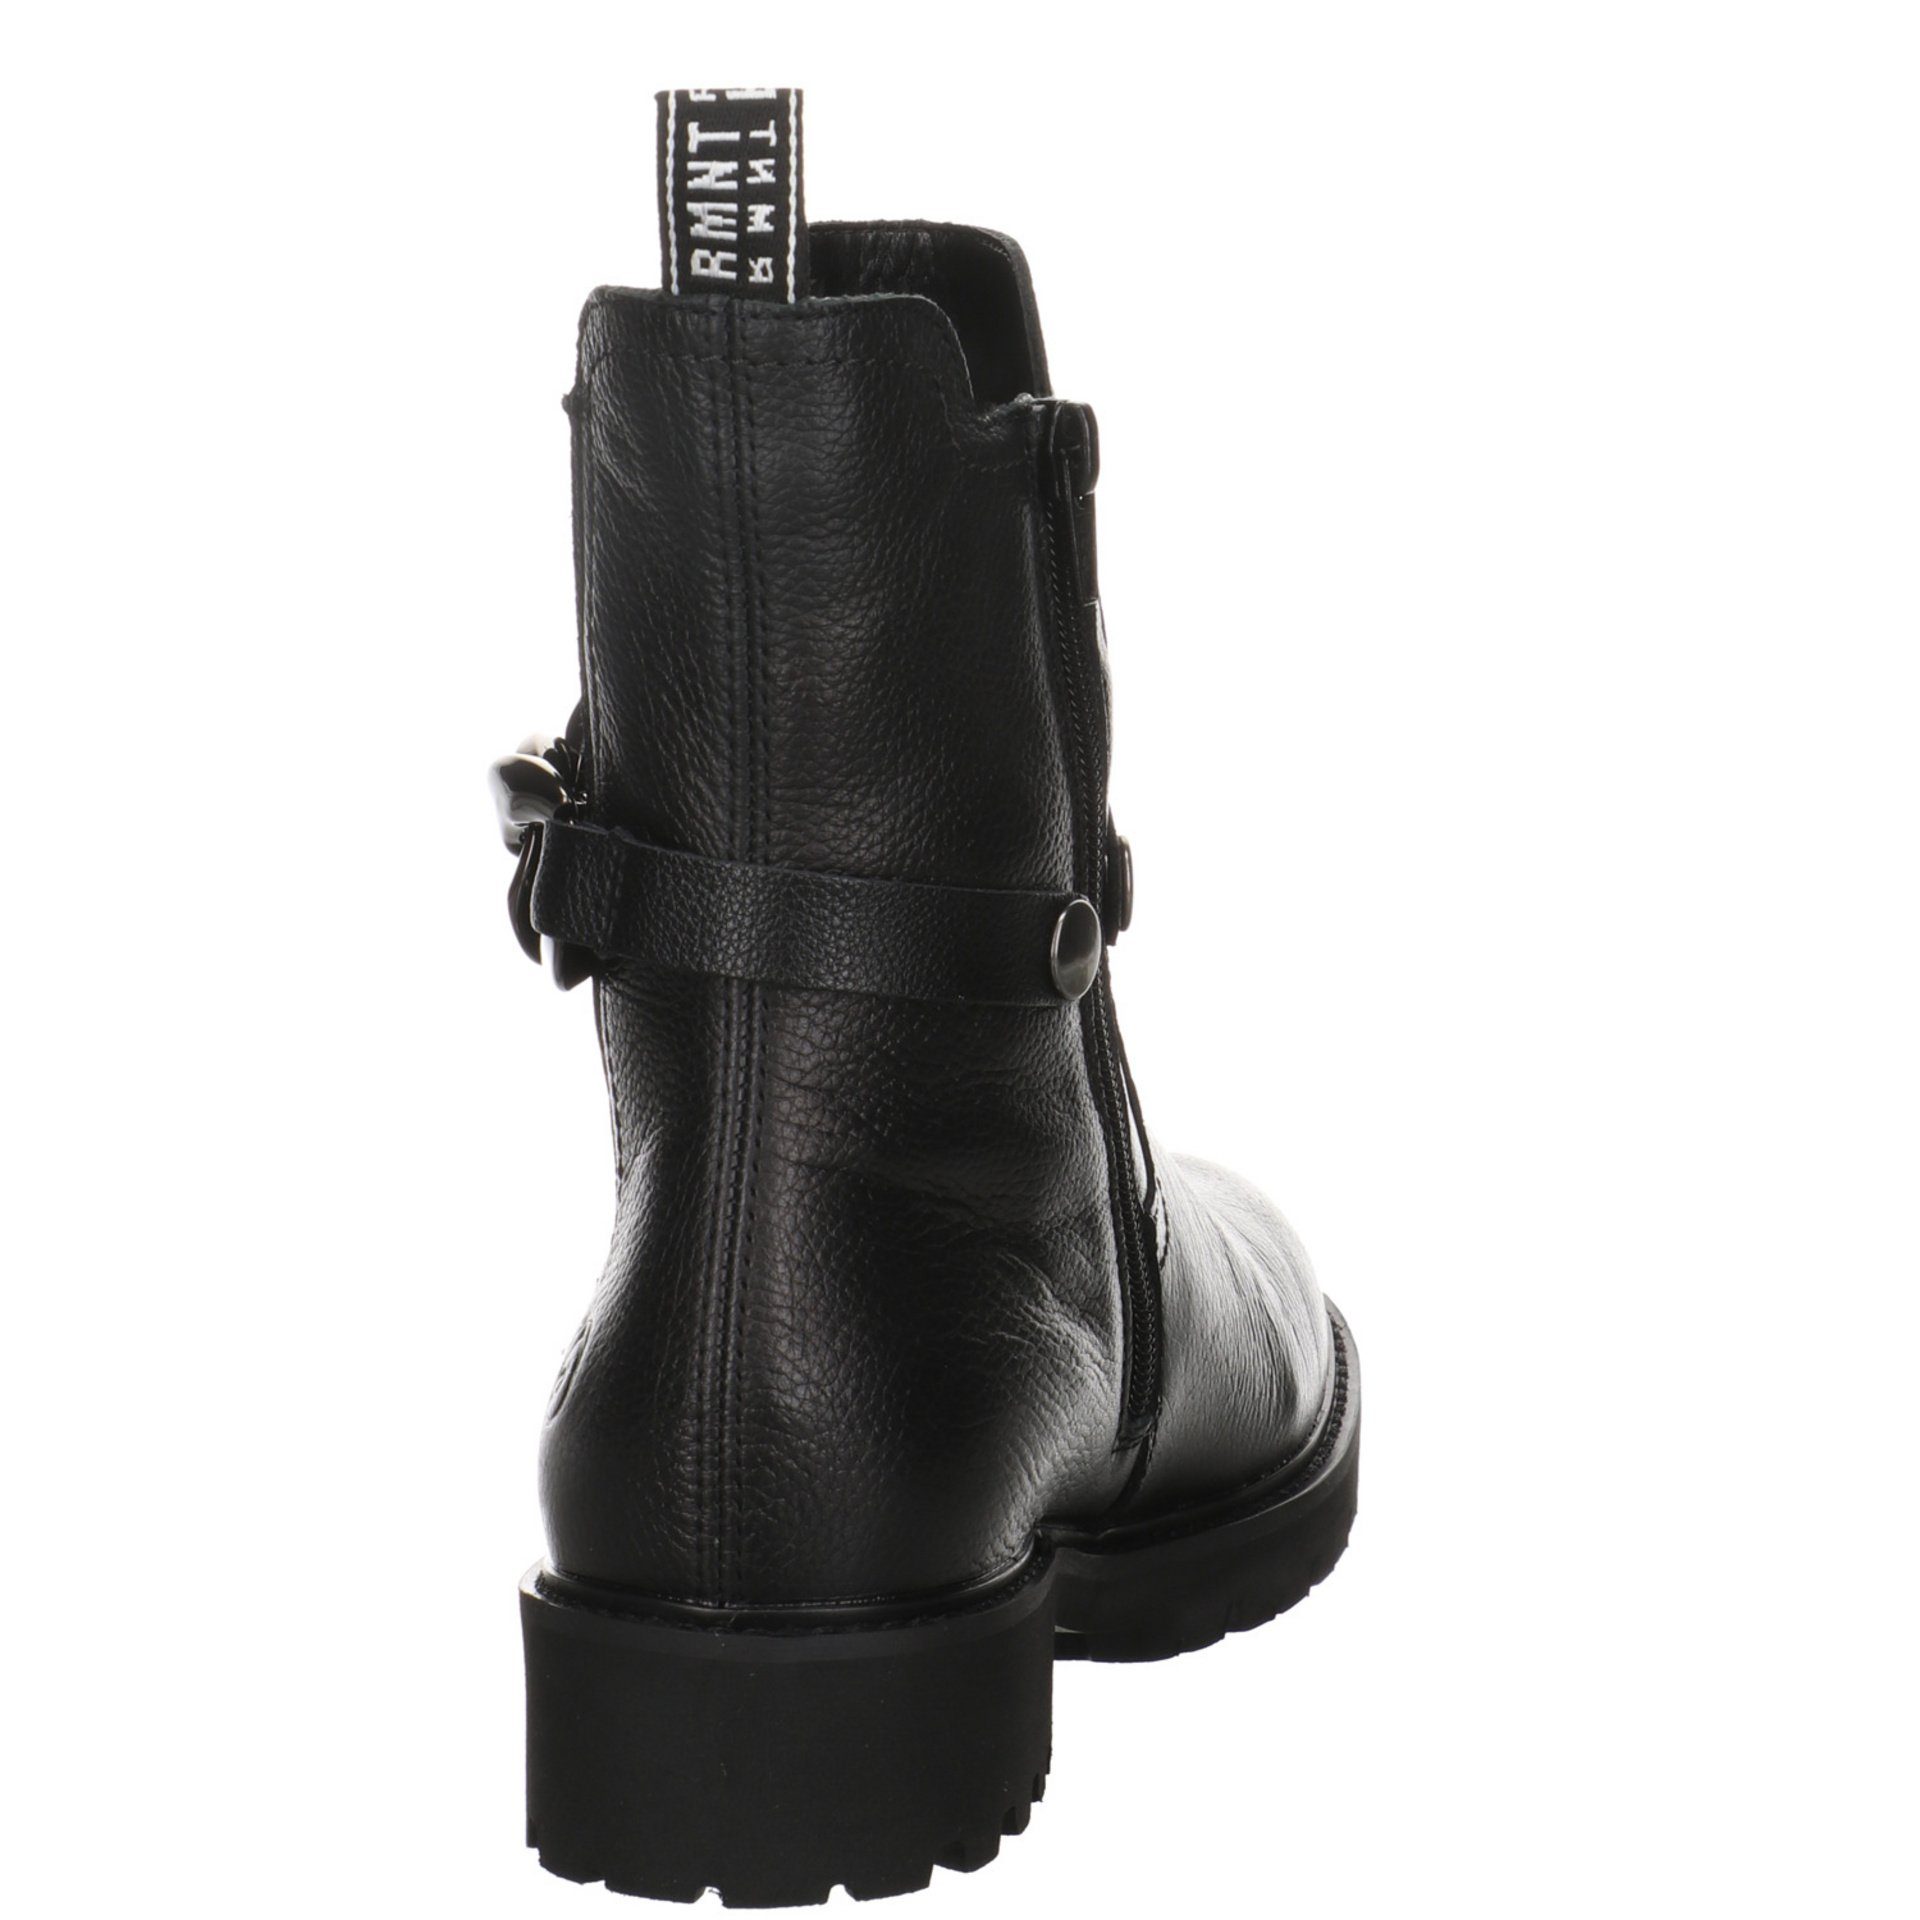 Freizeit Leder-/Textilkombination Boots Elegant Damen Stiefel Remonte Stiefel Schuhe